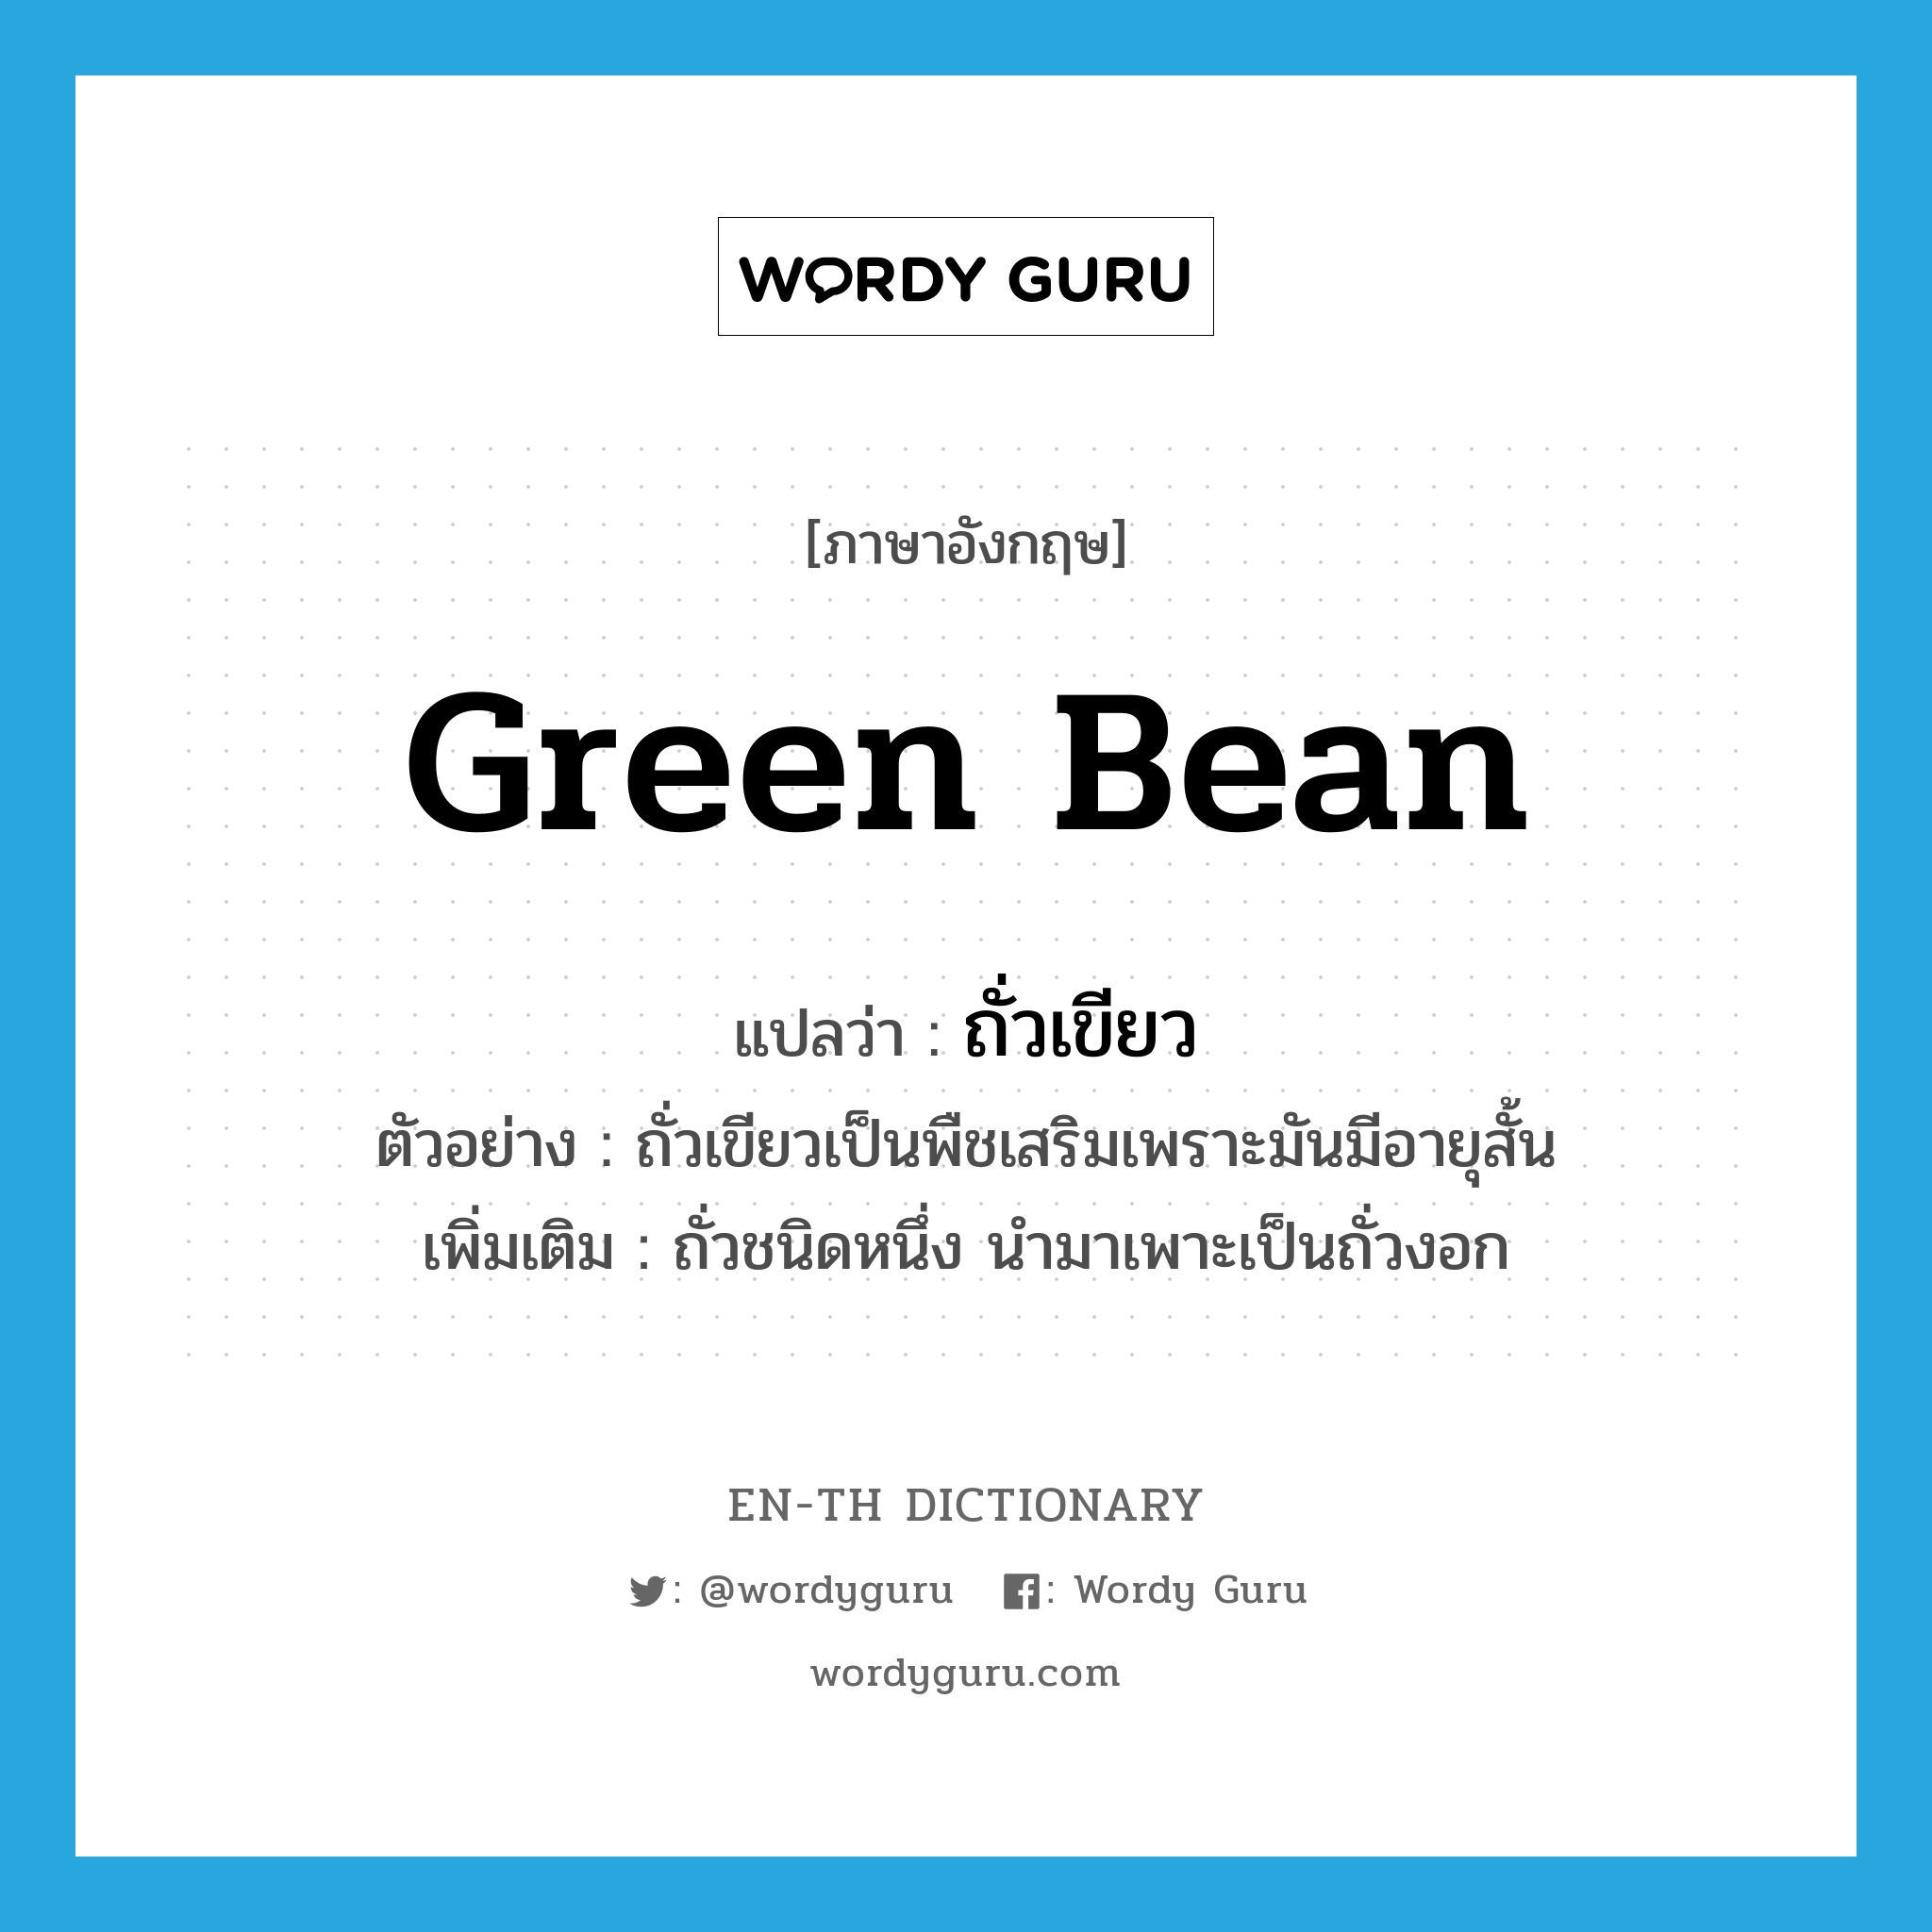 green bean แปลว่า?, คำศัพท์ภาษาอังกฤษ green bean แปลว่า ถั่วเขียว ประเภท N ตัวอย่าง ถั่วเขียวเป็นพืชเสริมเพราะมันมีอายุสั้น เพิ่มเติม ถั่วชนิดหนึ่ง นำมาเพาะเป็นถั่วงอก หมวด N